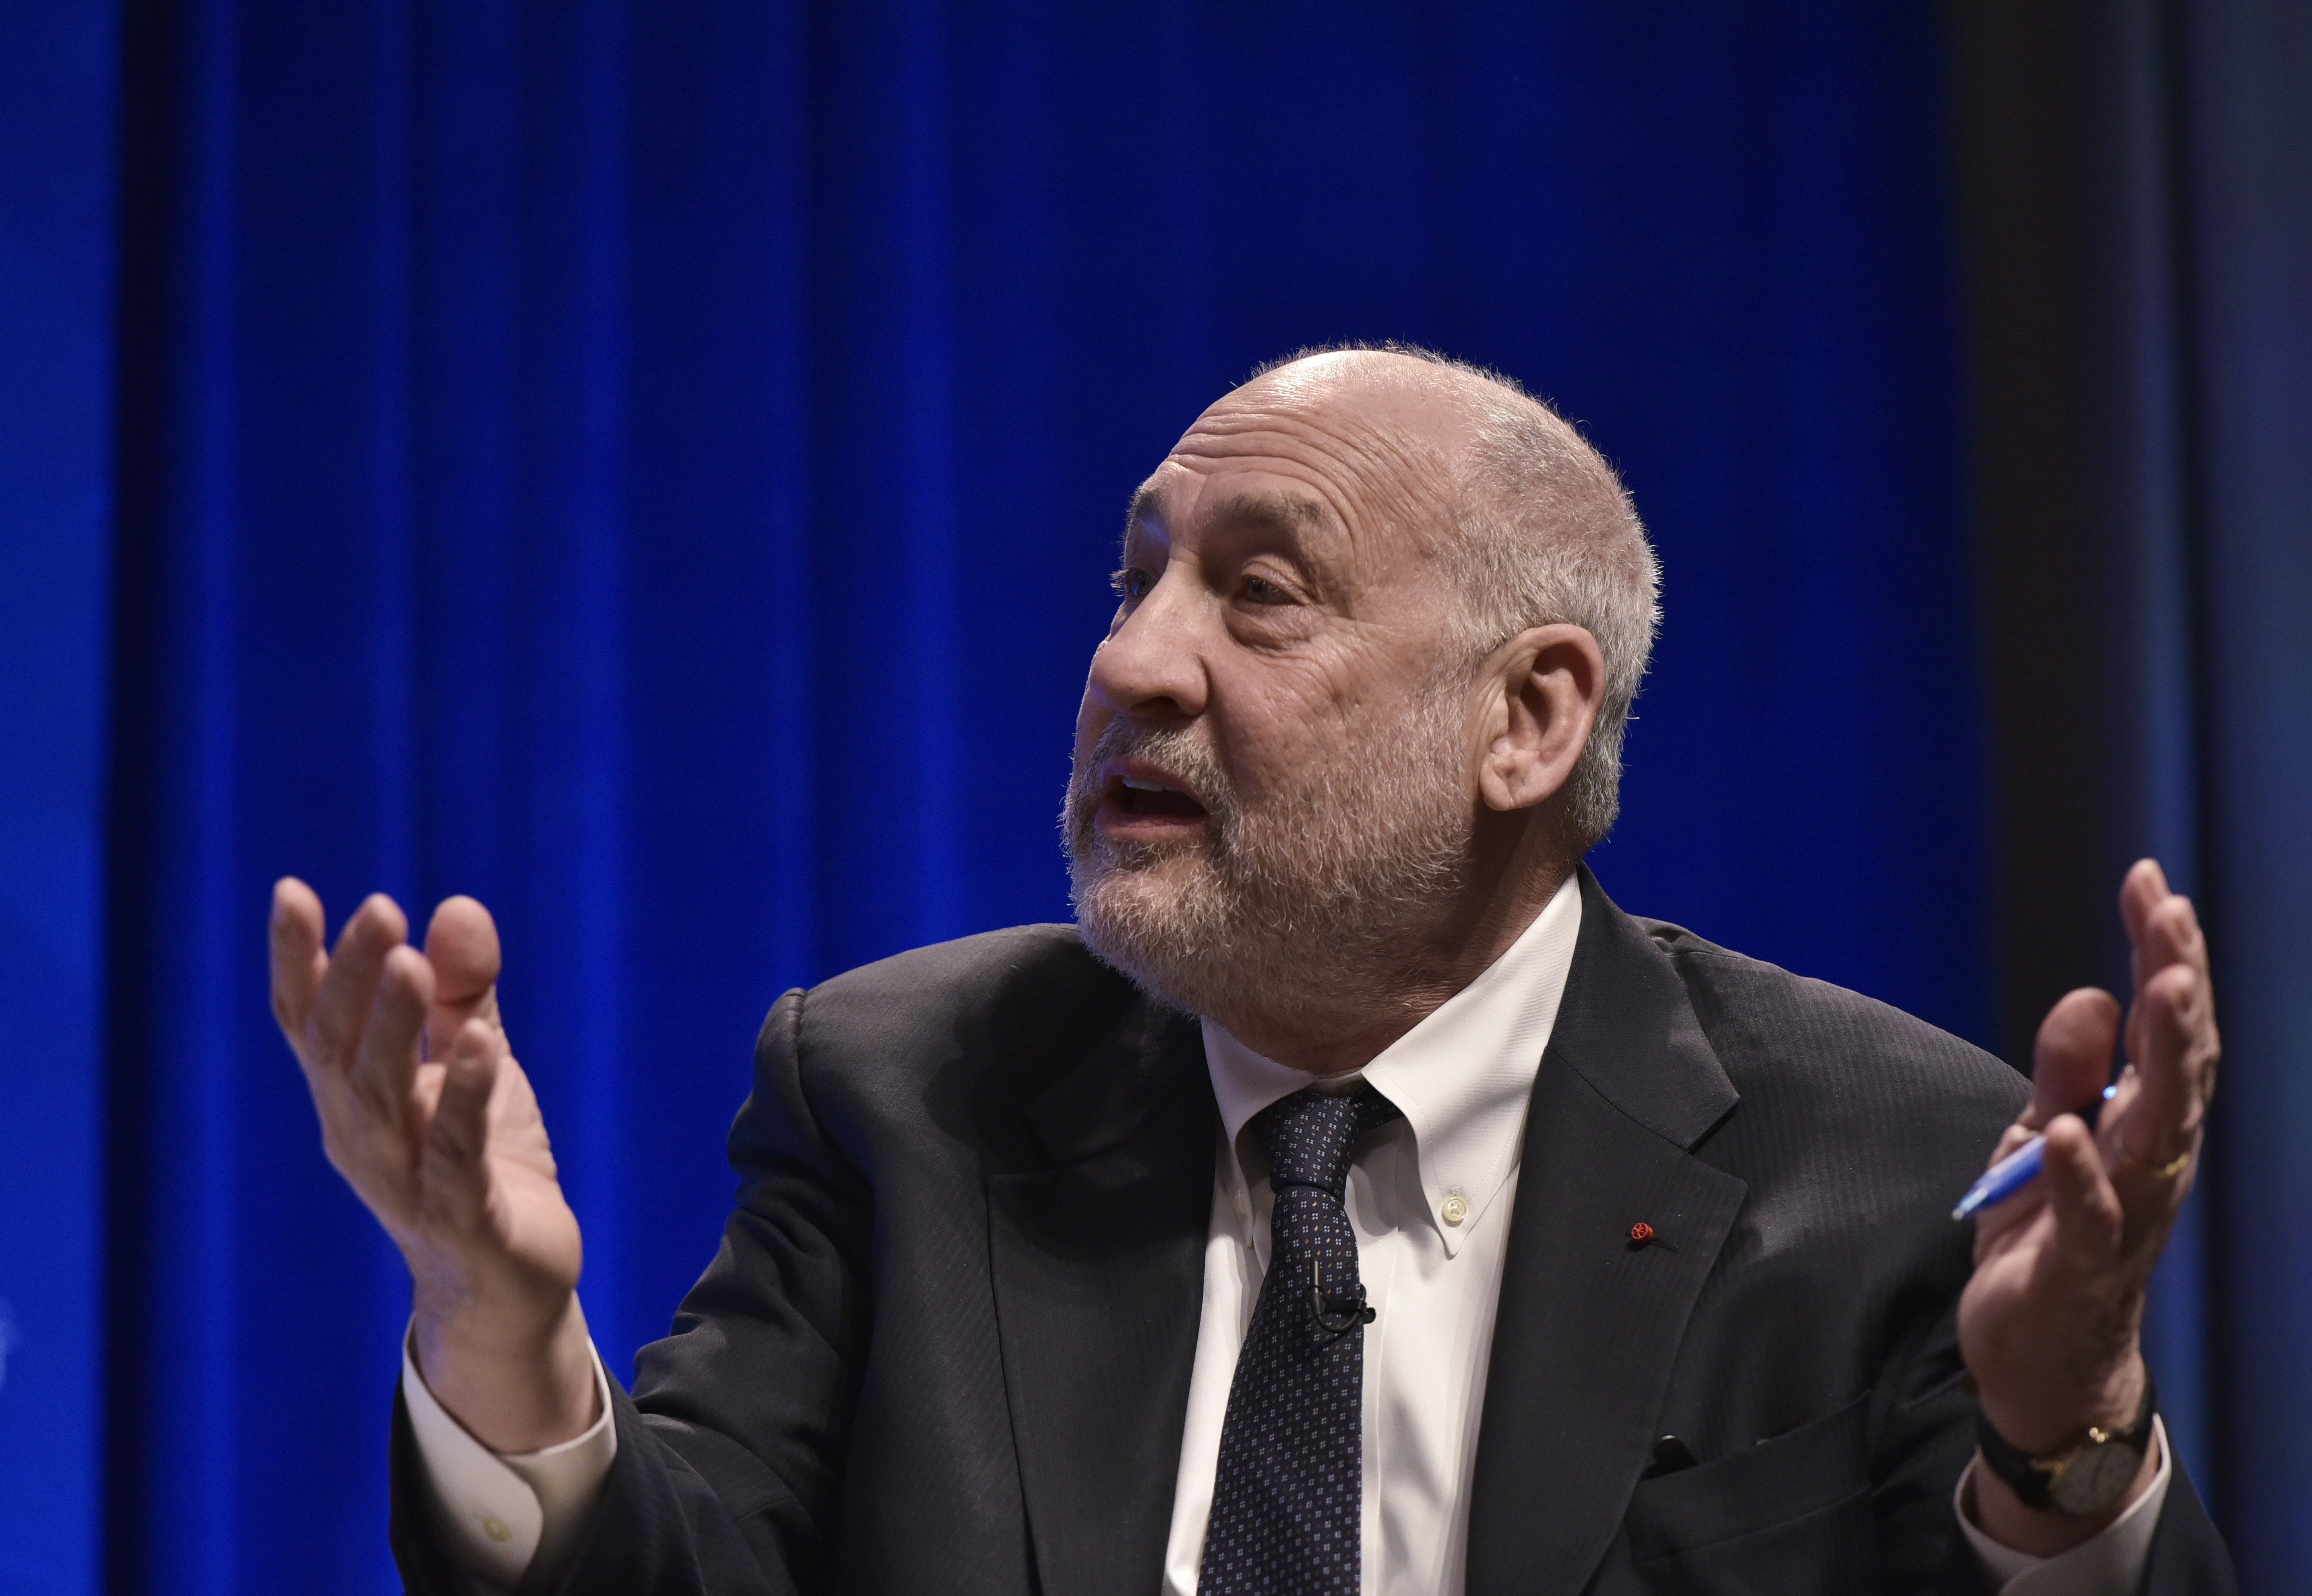 Neue Bankenkrise in Europa: Wirtschaftsnobelpreisträger Stiglitz warnt – „keine Zeit verlieren, müssen handeln“